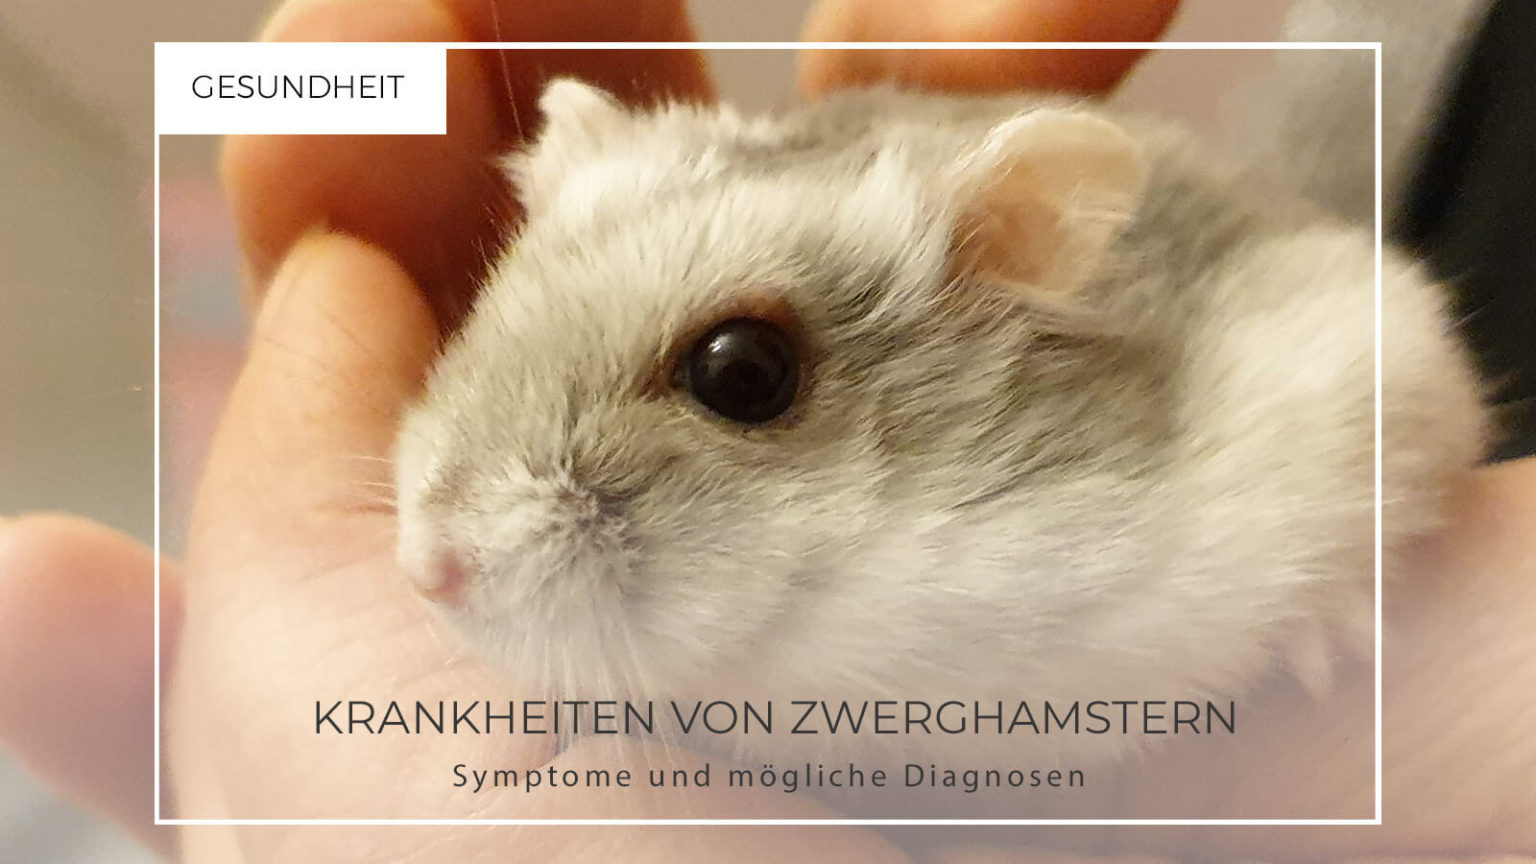 Krankheiten von Dsungarischen Zwerghamstern - Hamster Krankheiten 1536x864